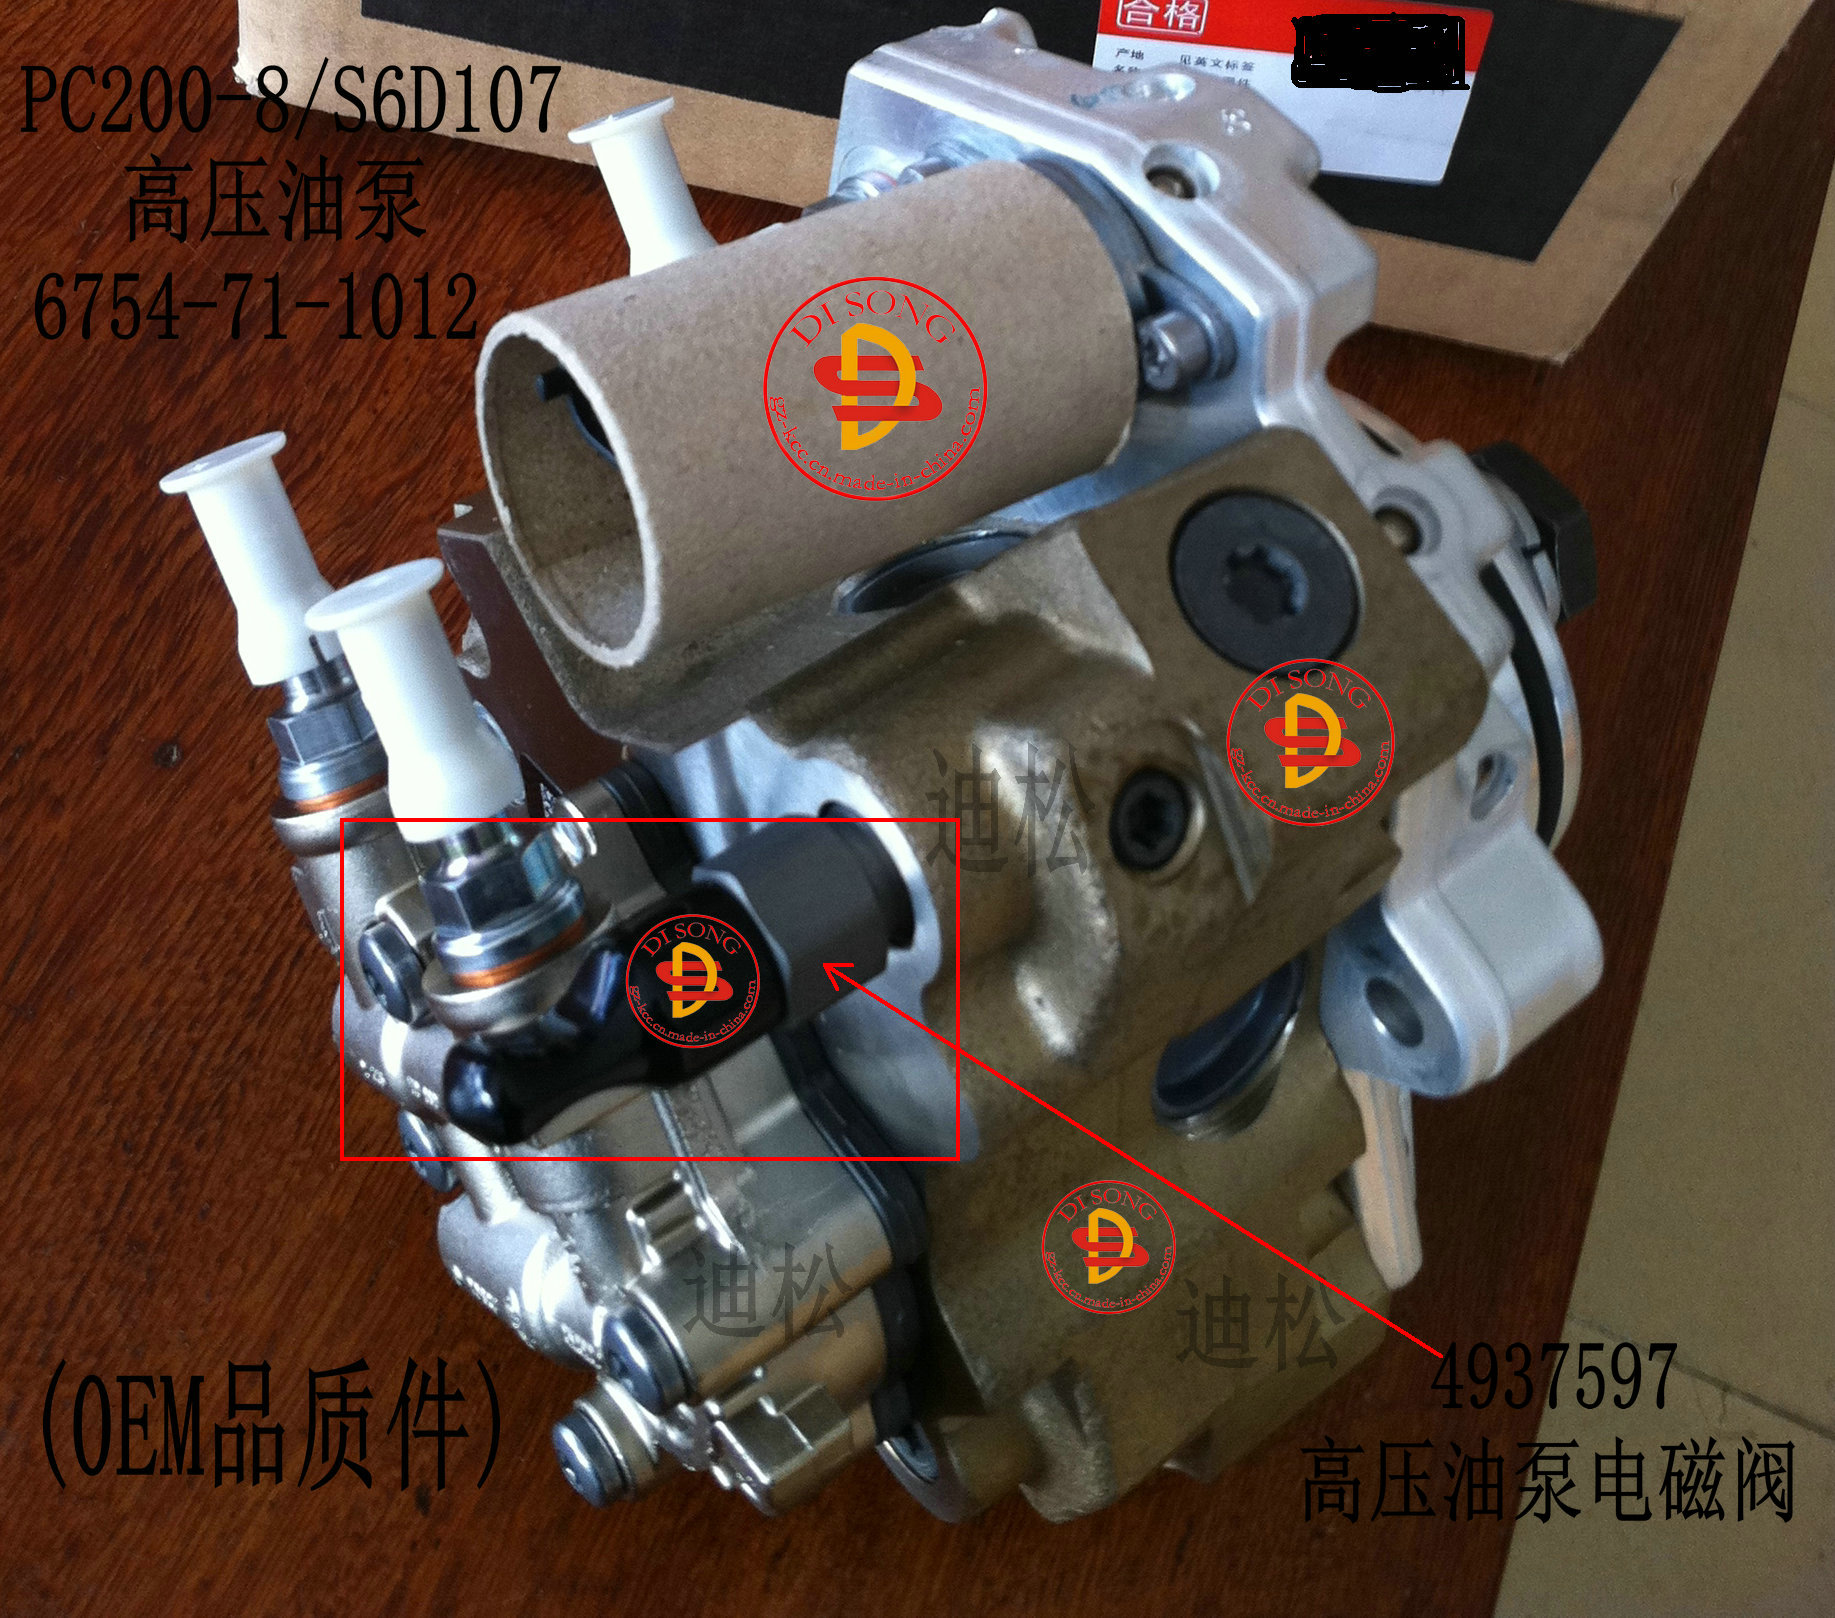 高压油泵电磁阀4937597,pc200-8